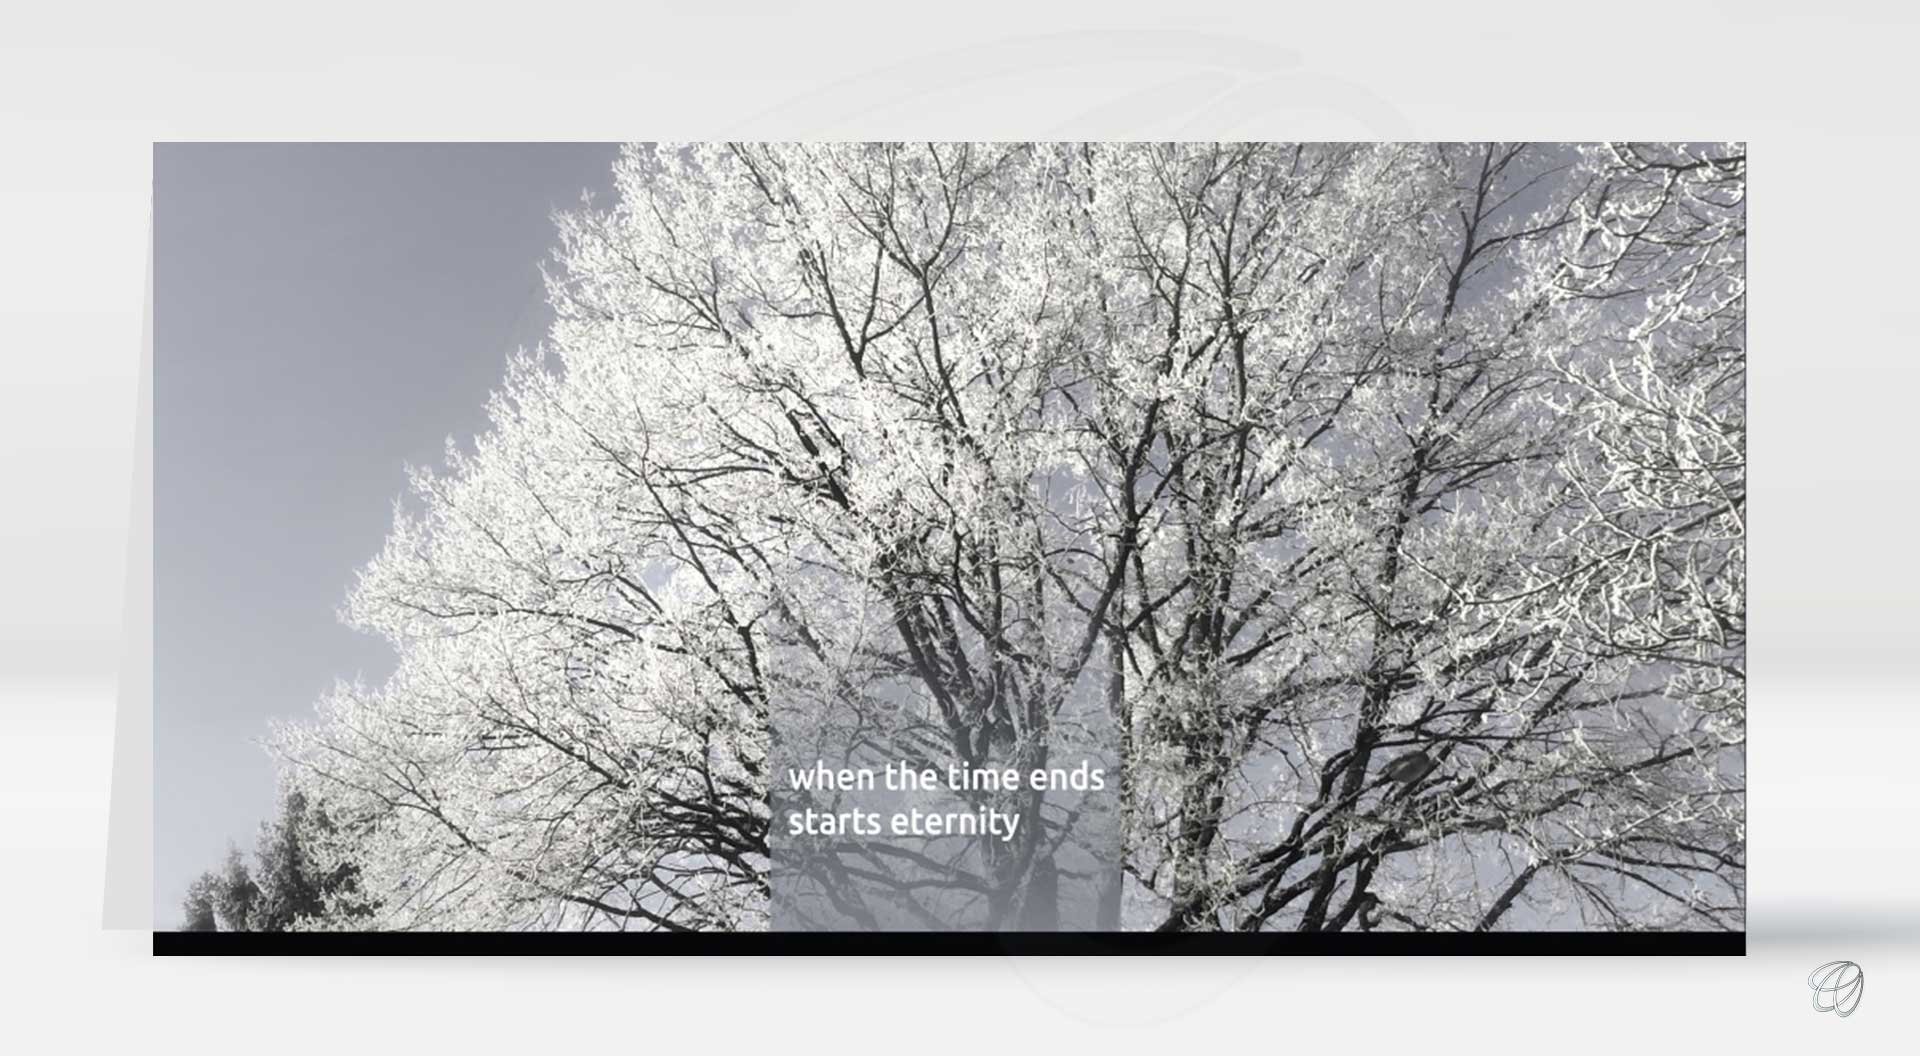 moderne lichtgraue Trauerkarte mit Raureif bedecktem Baum und Spruch, lichtgrauer oder weisser Briefumschlag